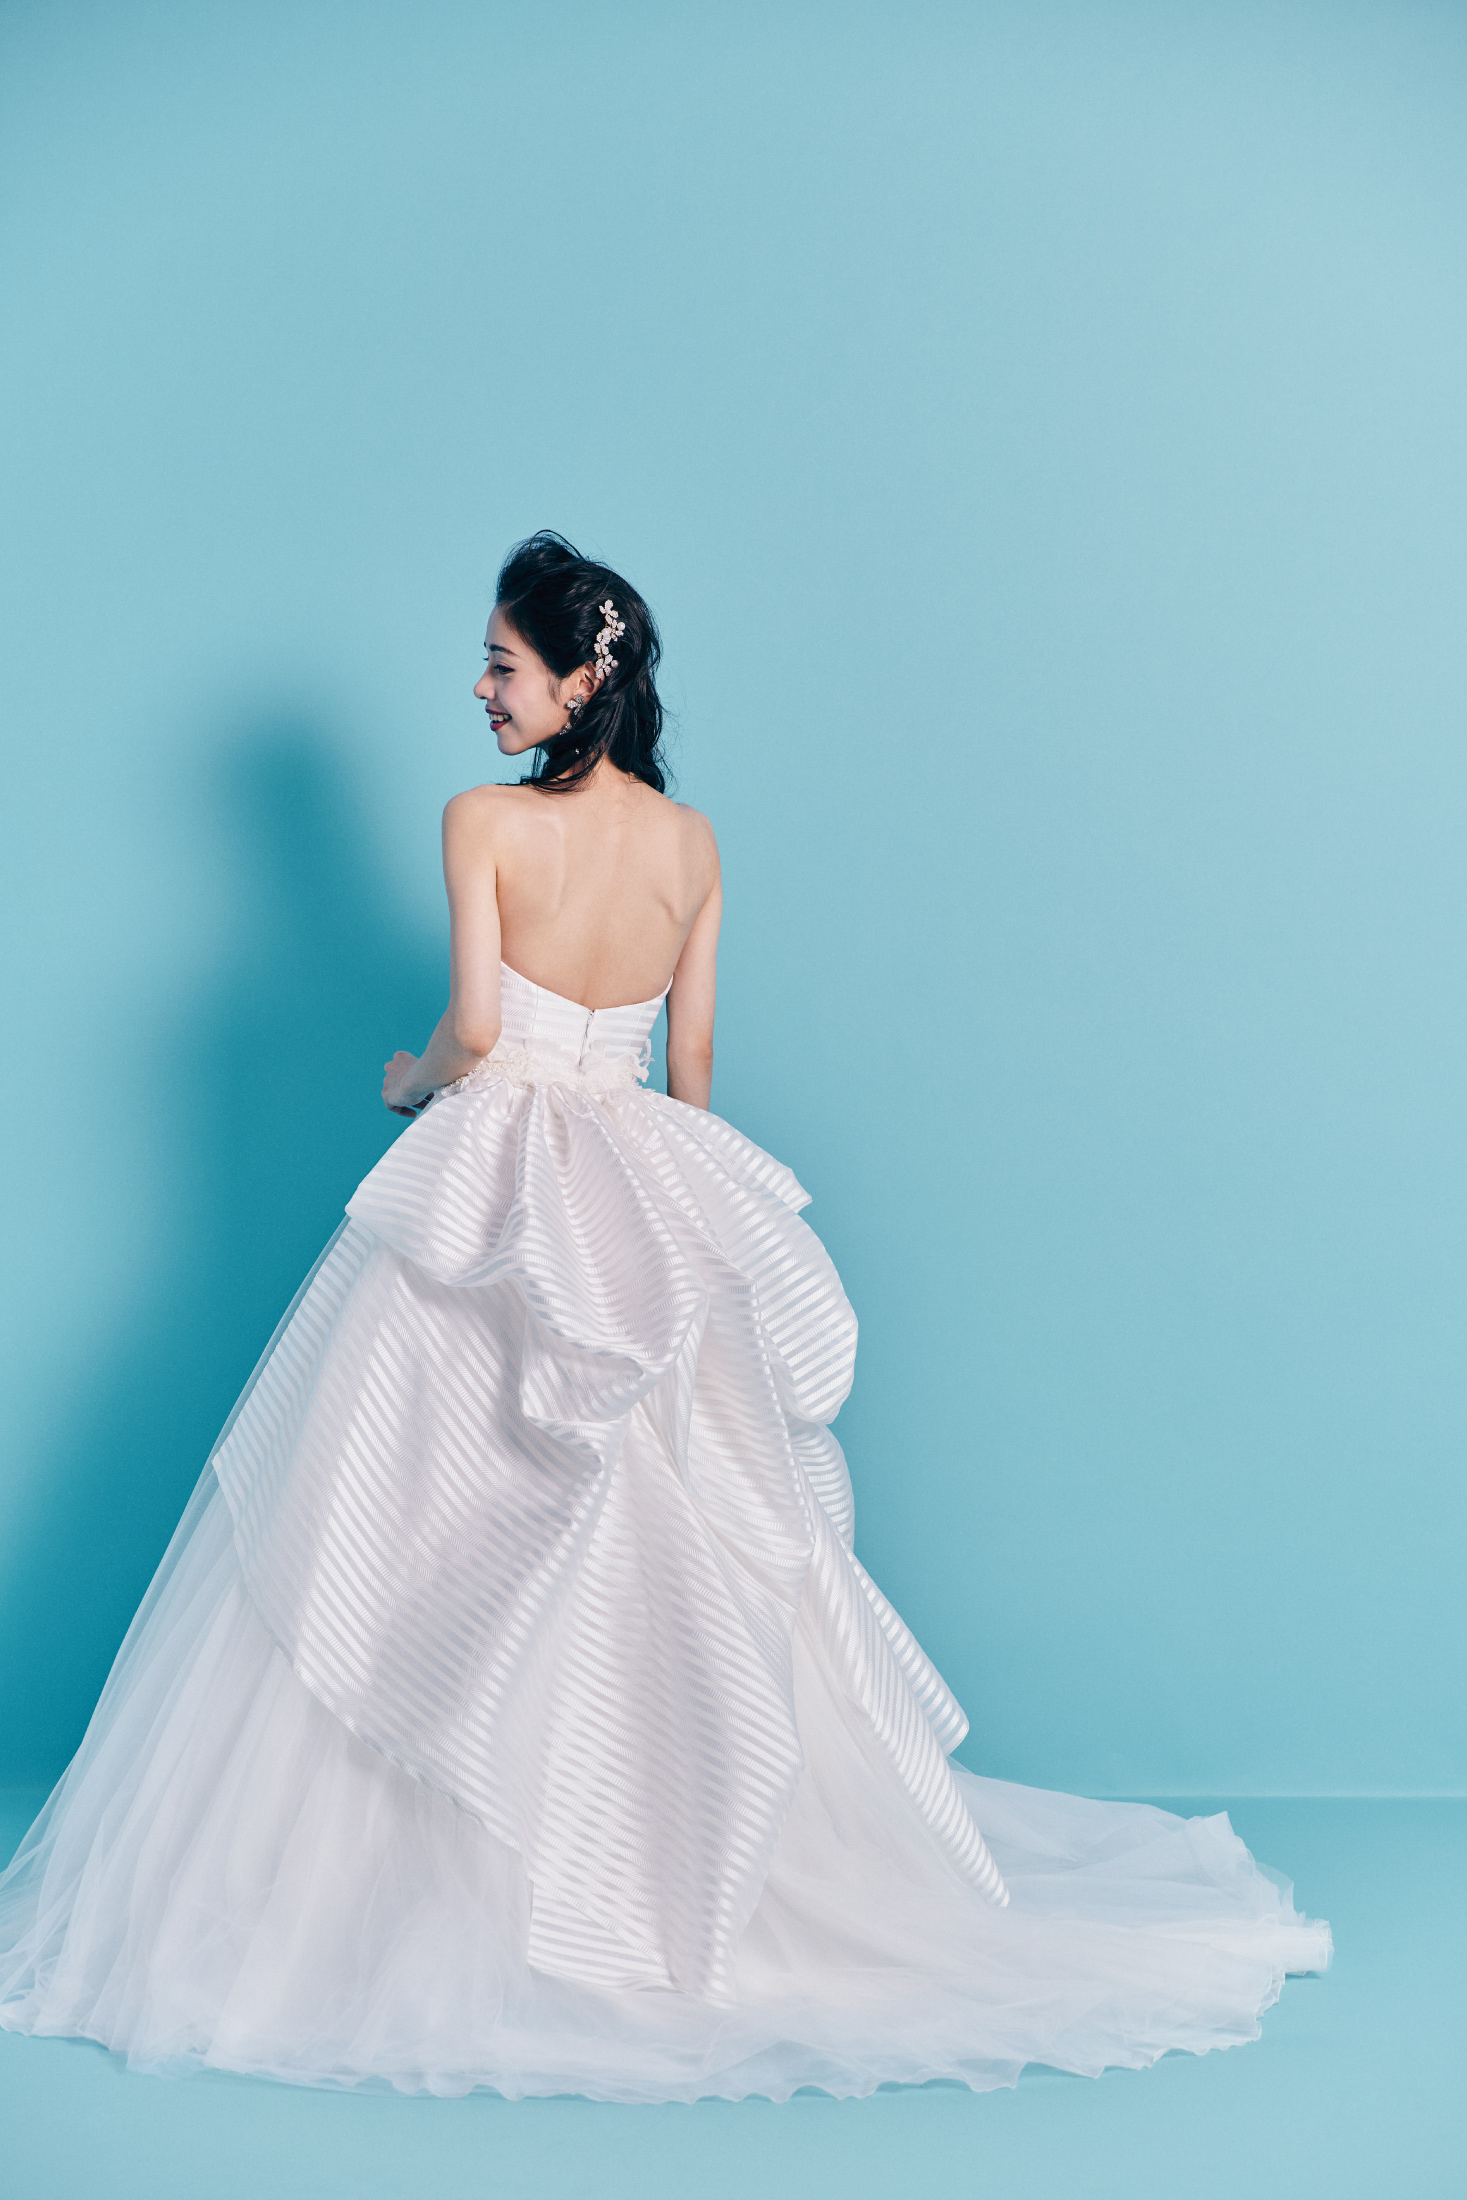 Chiara キアーラ【 ウエディングドレス レンタル】Aライン チュール シルクサテン ドレス